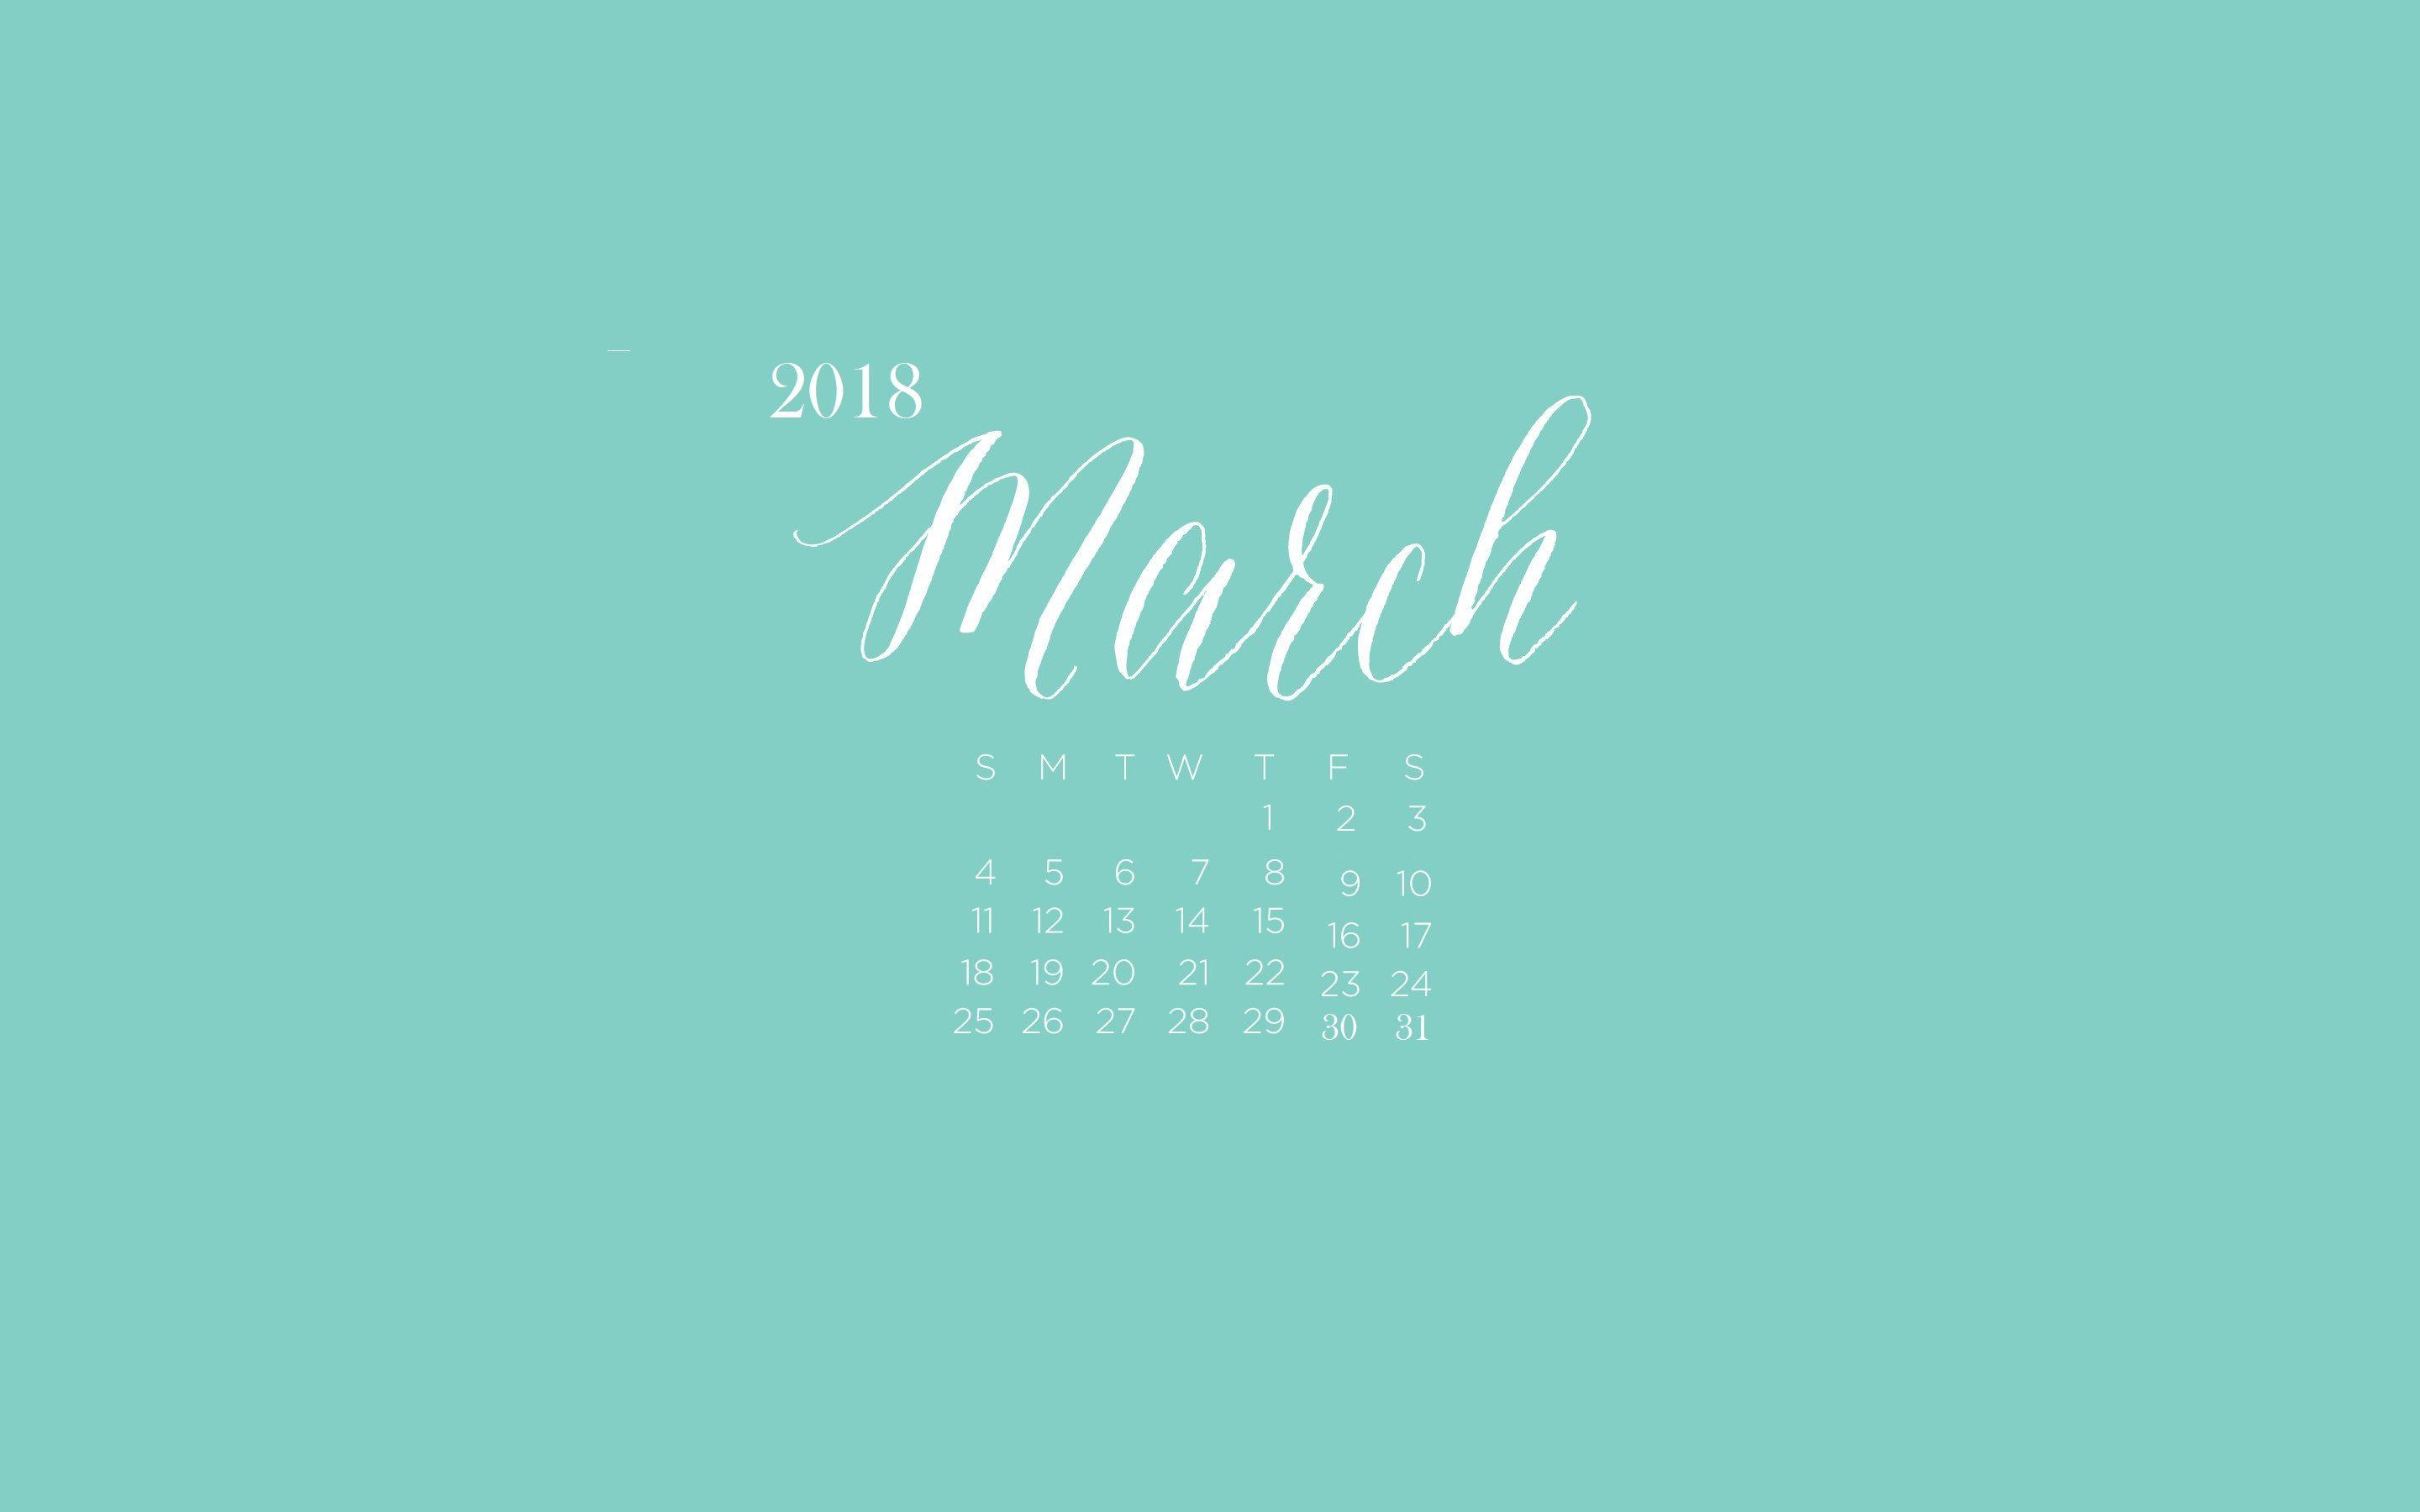 March 2018 Calendar Wallpaper